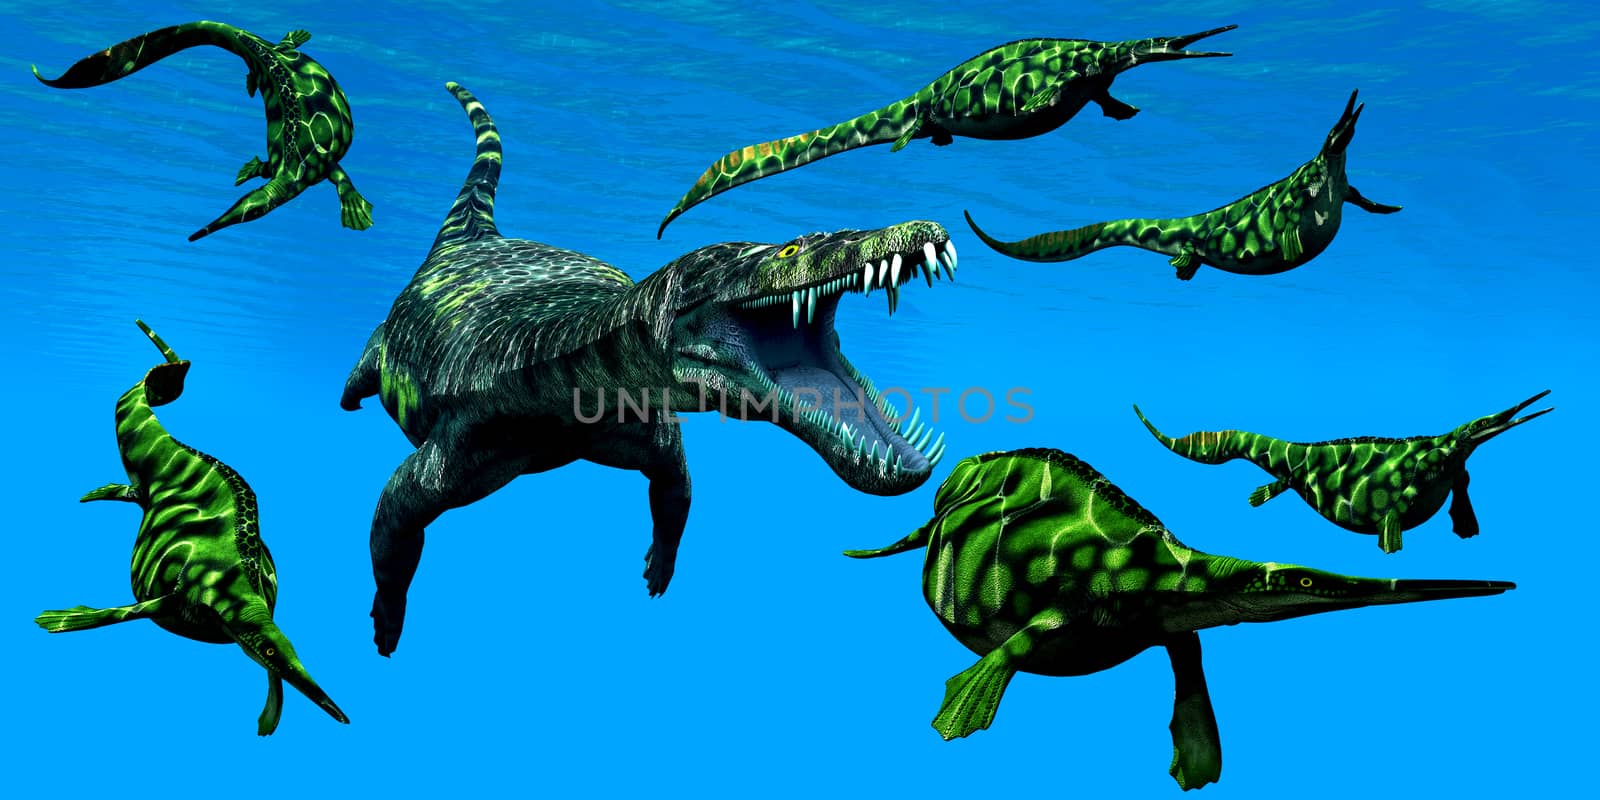 Nothosaurus Marine Reptile by Catmando